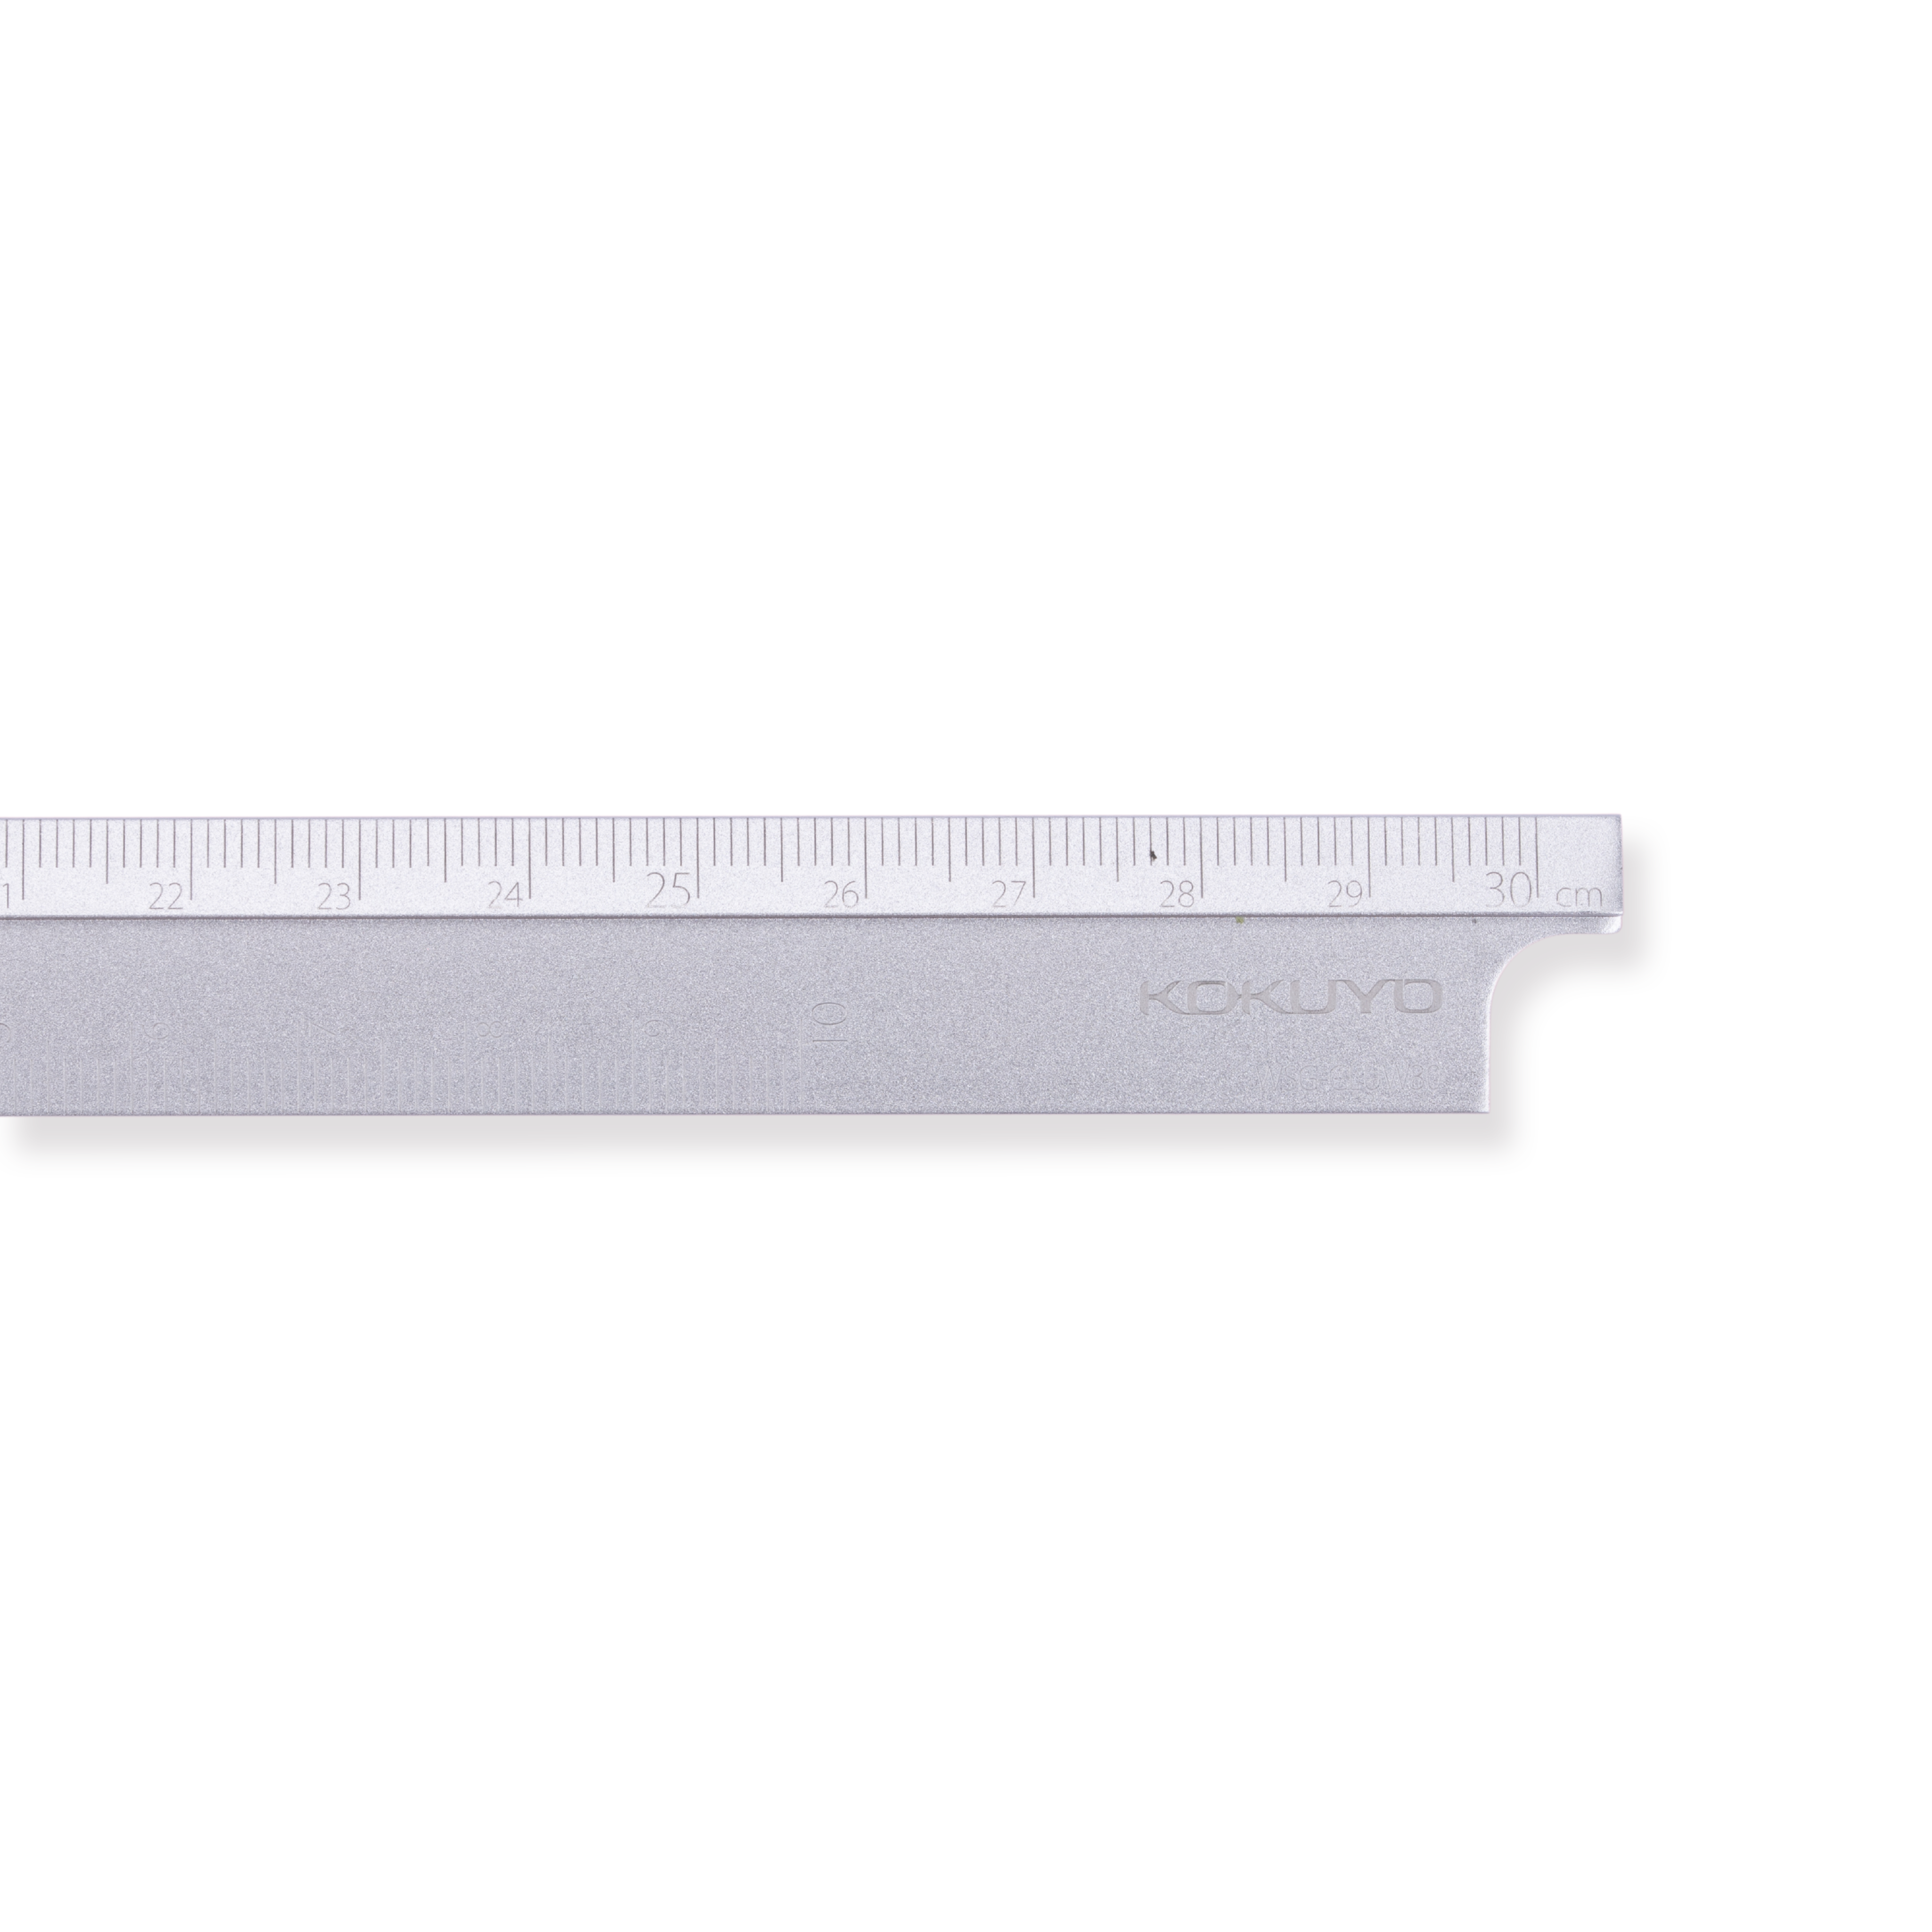 Metro plegable de aluminio Kokuyo - 15/30 cm - Plata